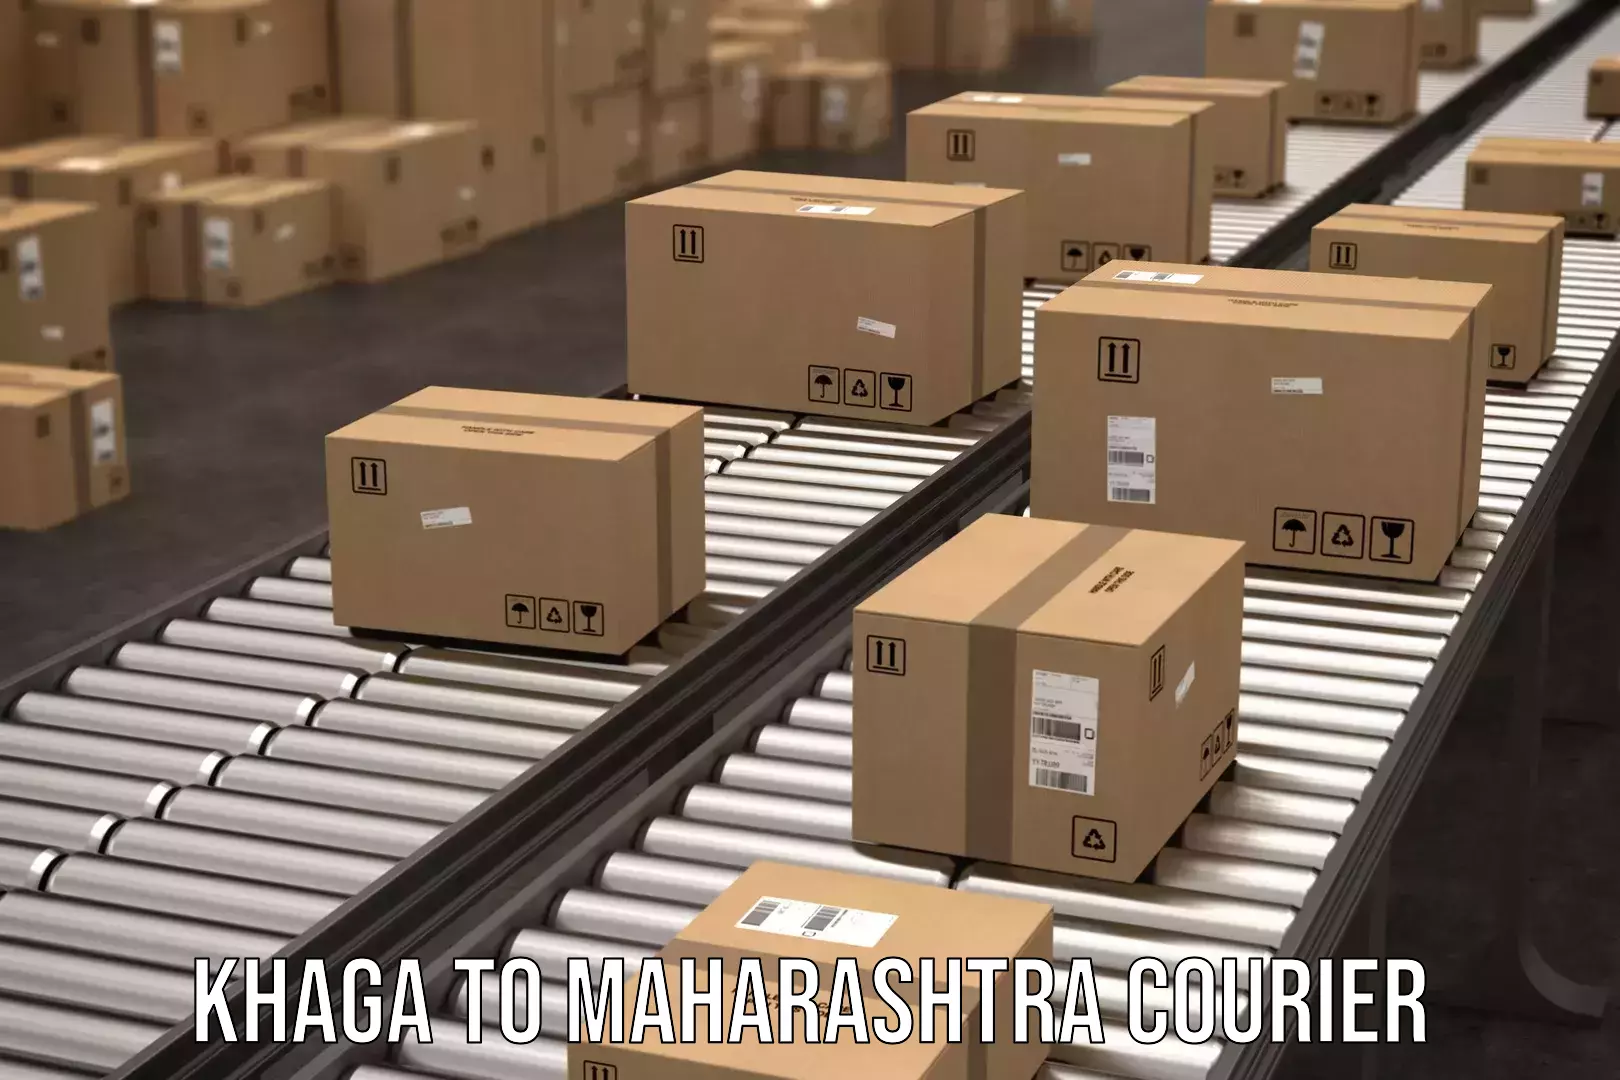 Express logistics service Khaga to Maharashtra